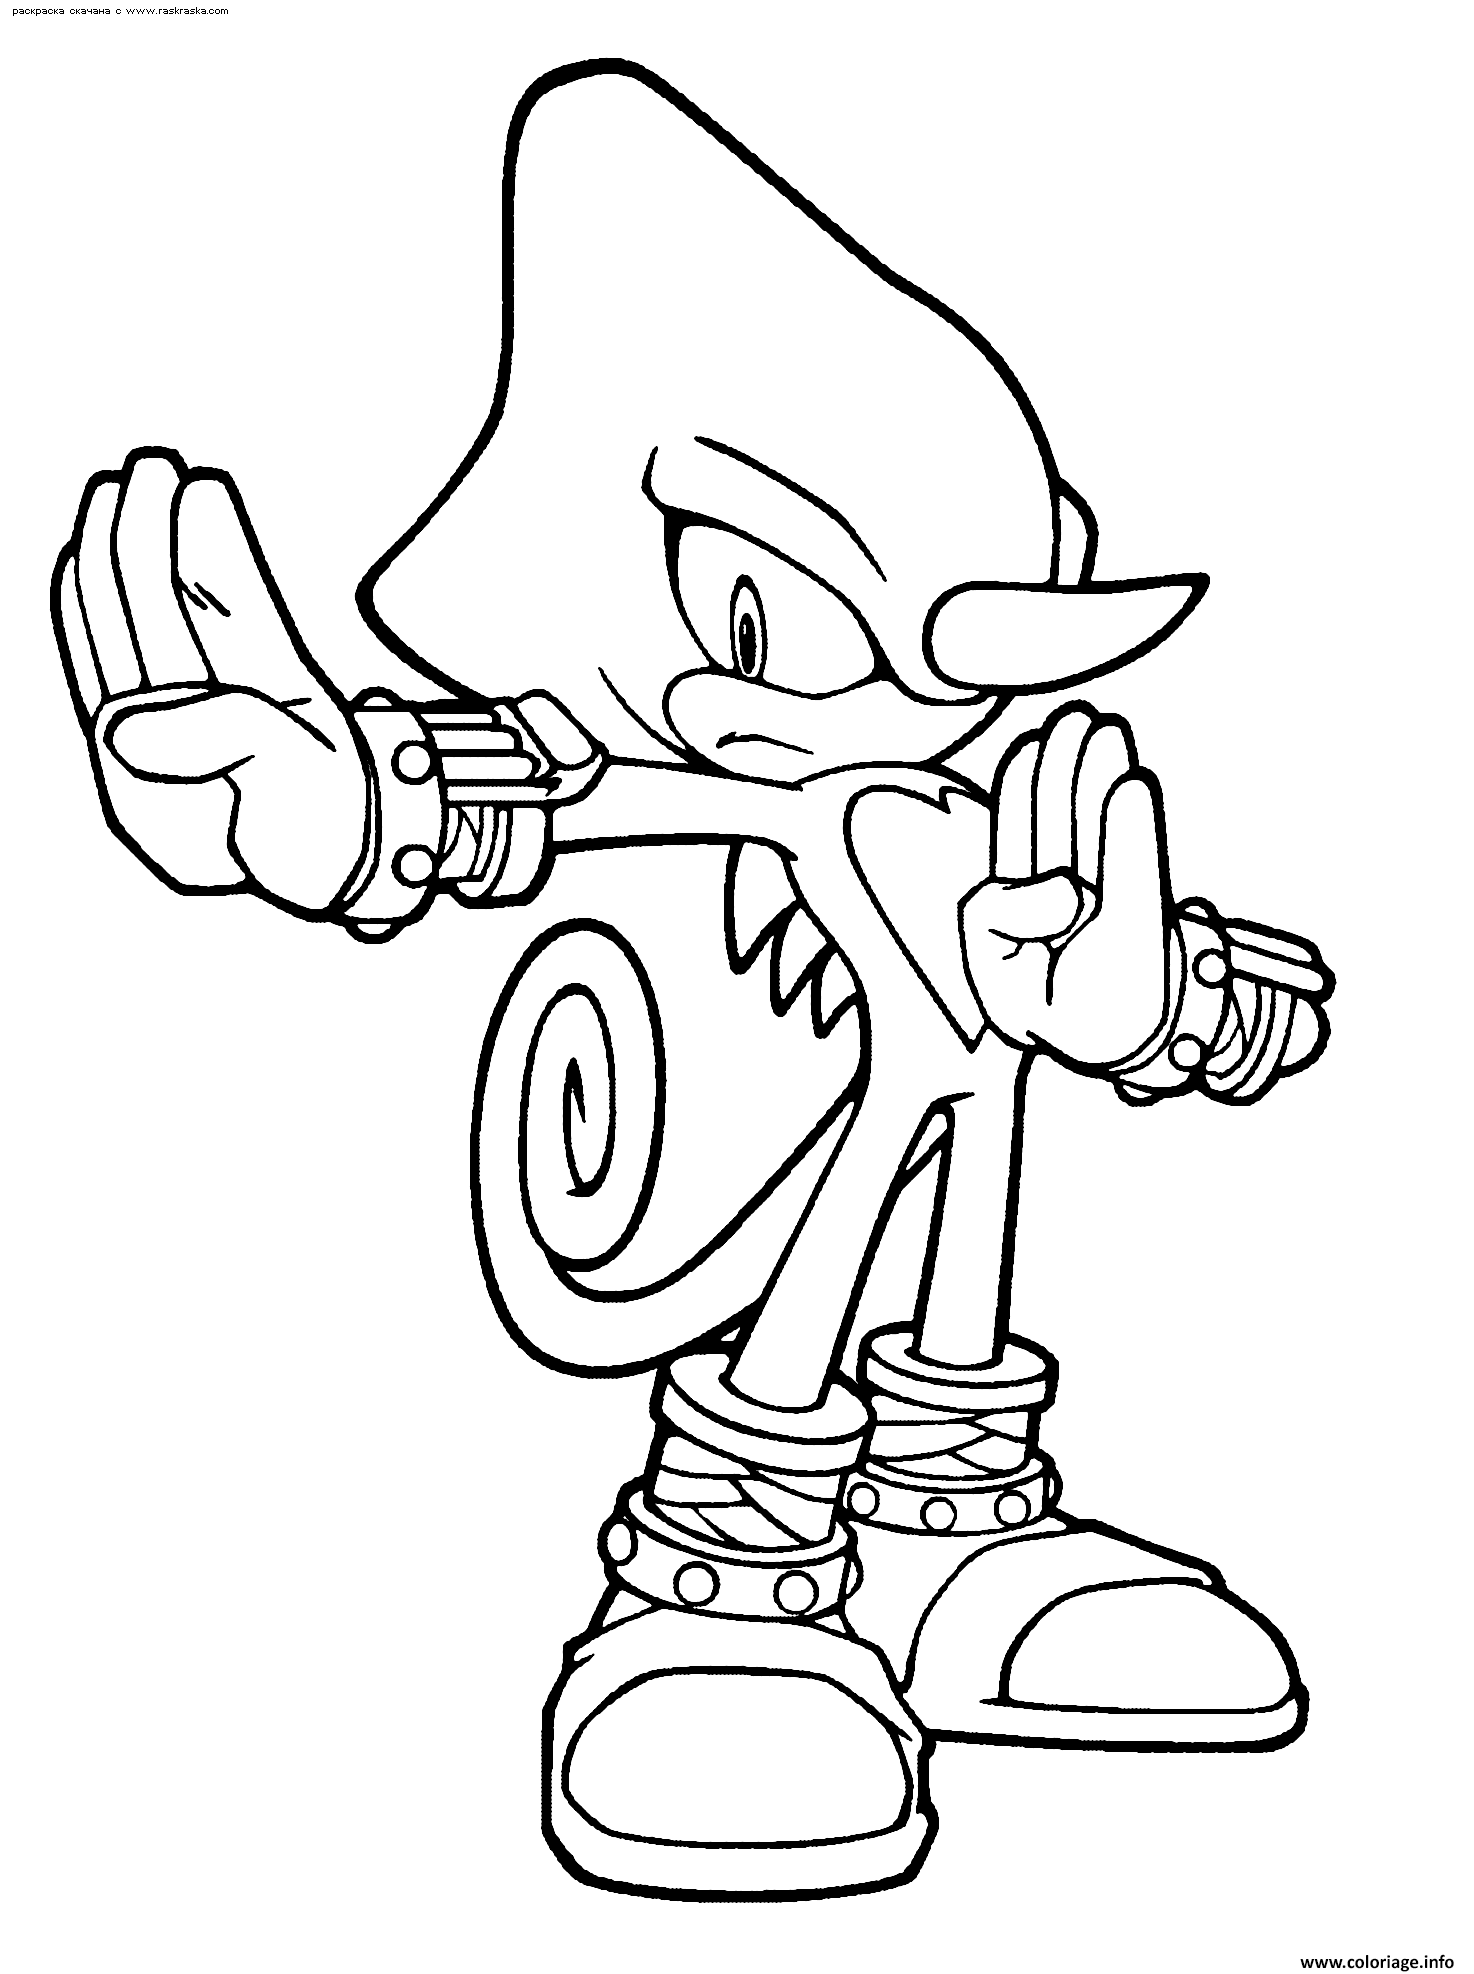 Coloriage Sonic 247 dessin